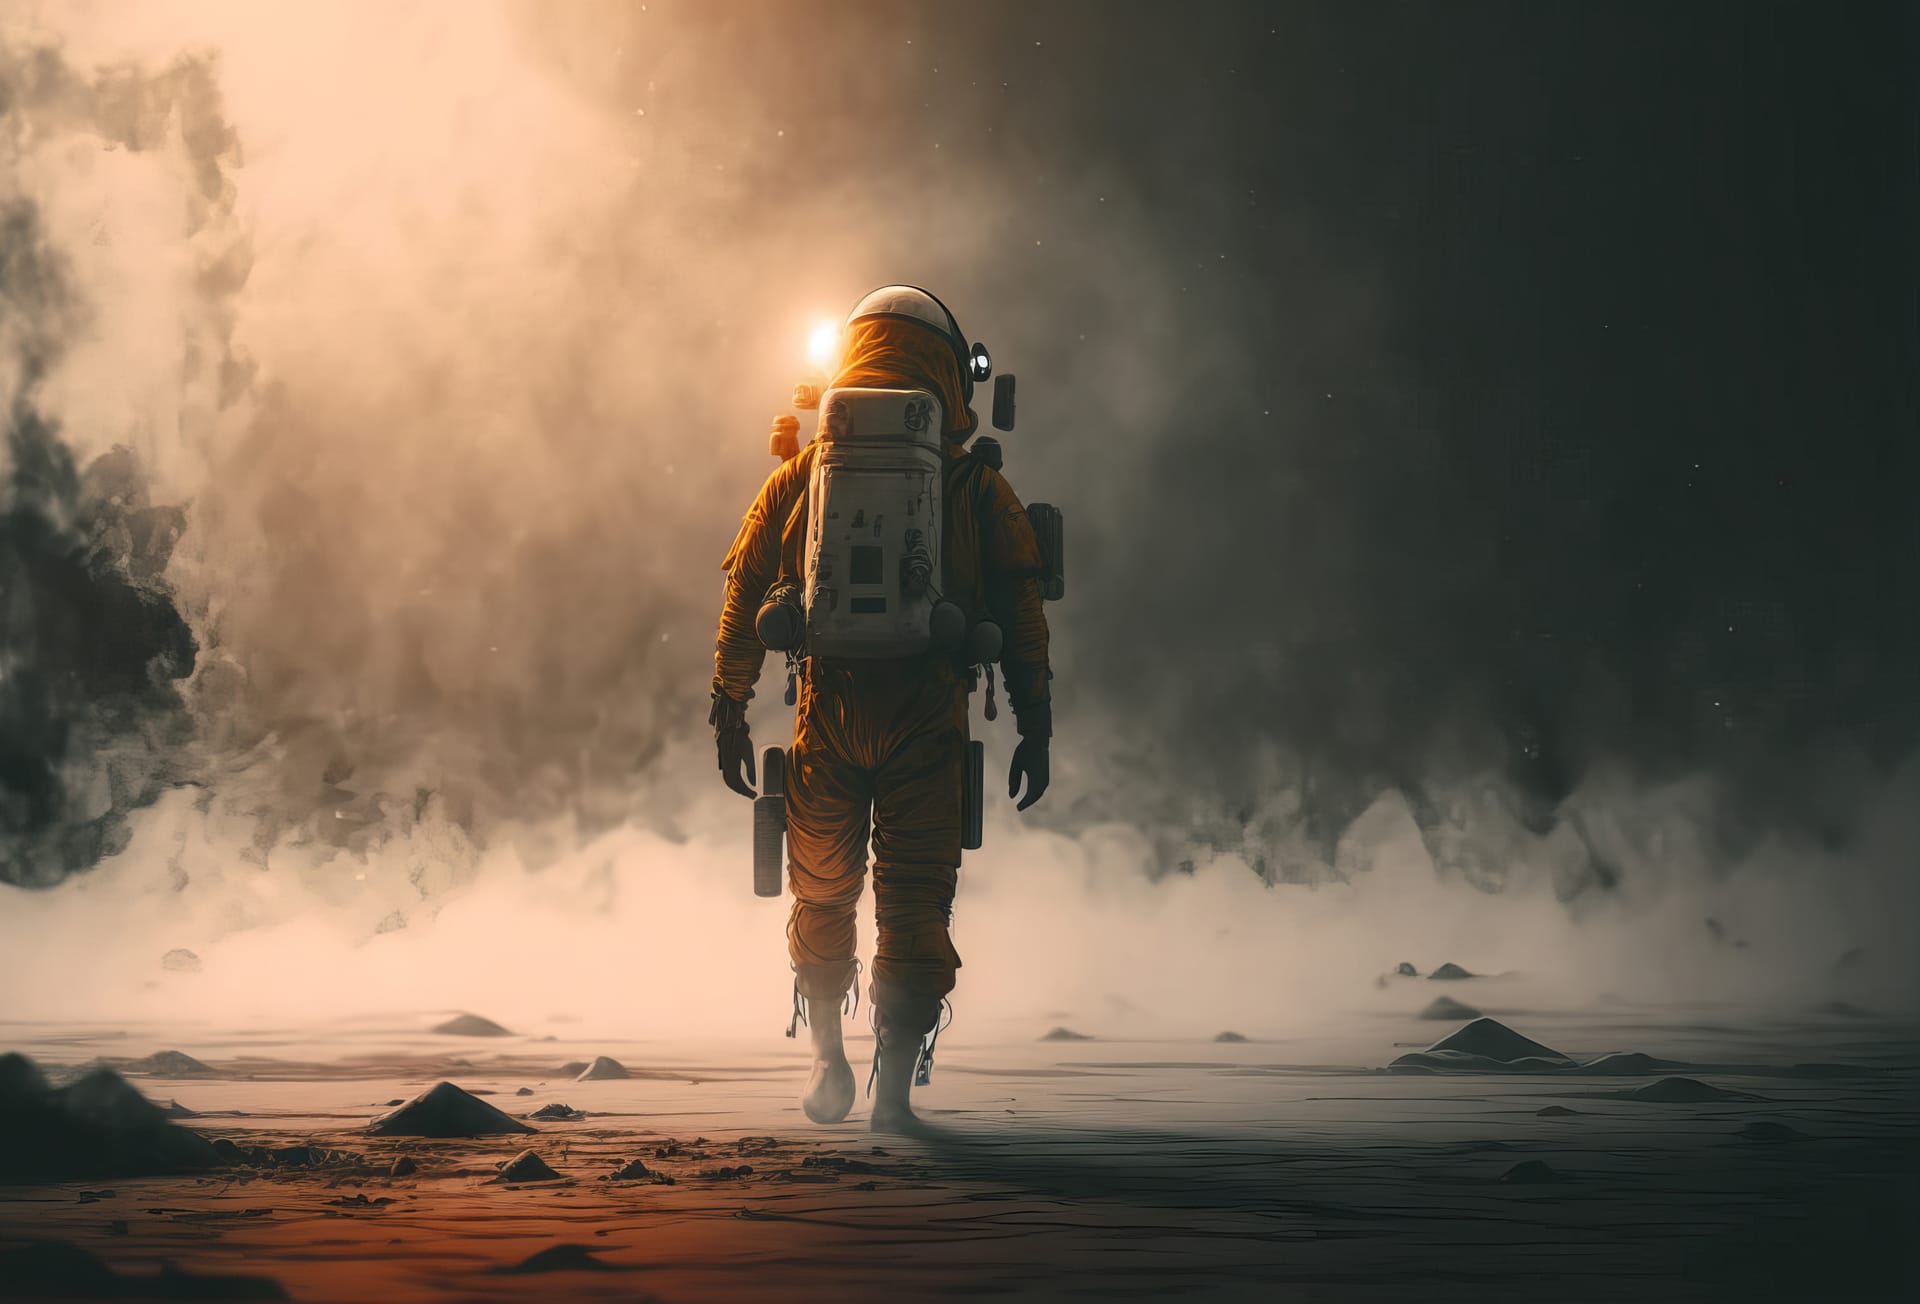 Spaceman walking through misty distant planet landscape astronaut profile picture